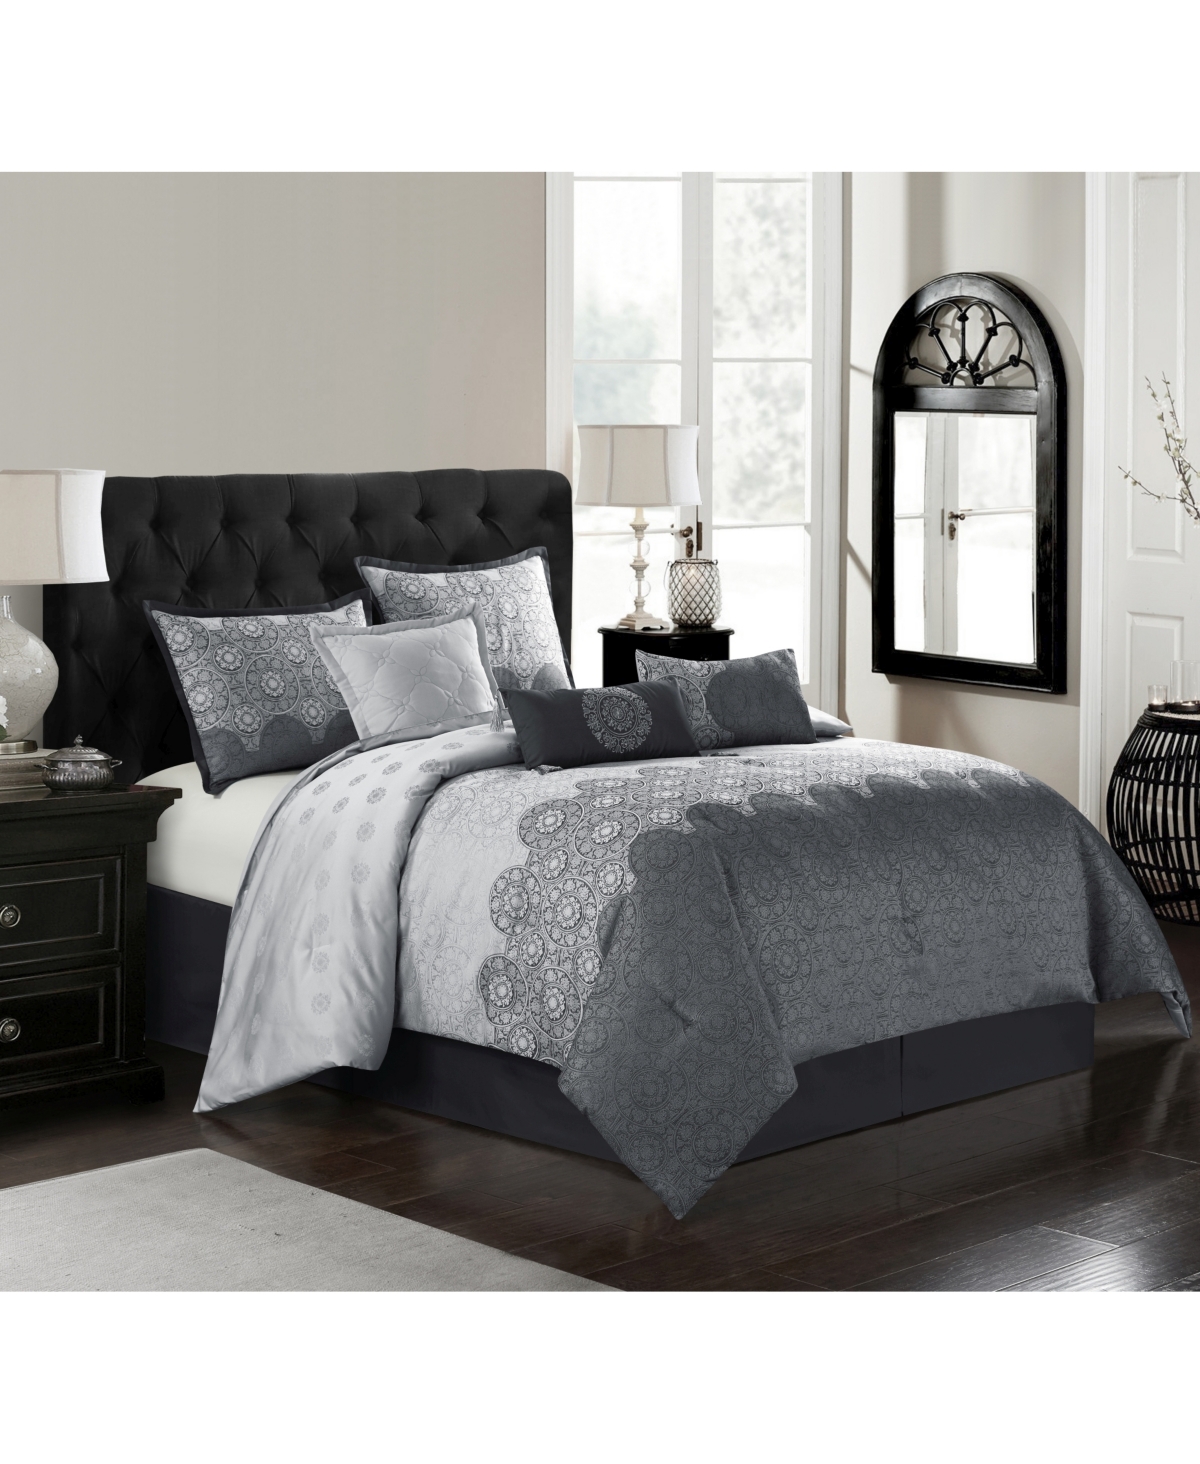 Nanshing Harwick 7-piece Queen Comforter Set Bedding In Grey